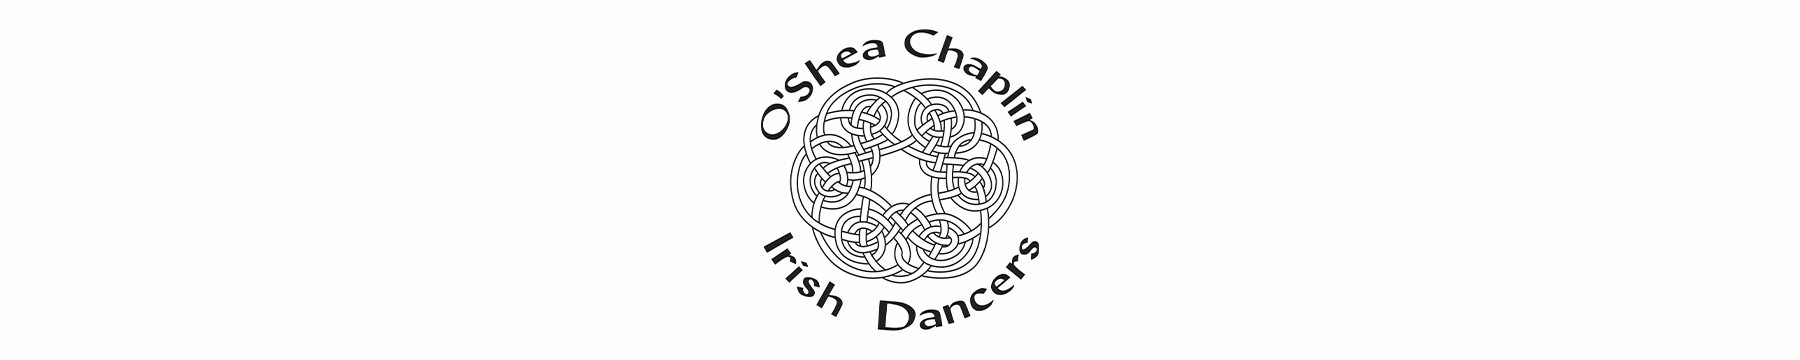 O'shea-Chaplin Irish Dancers